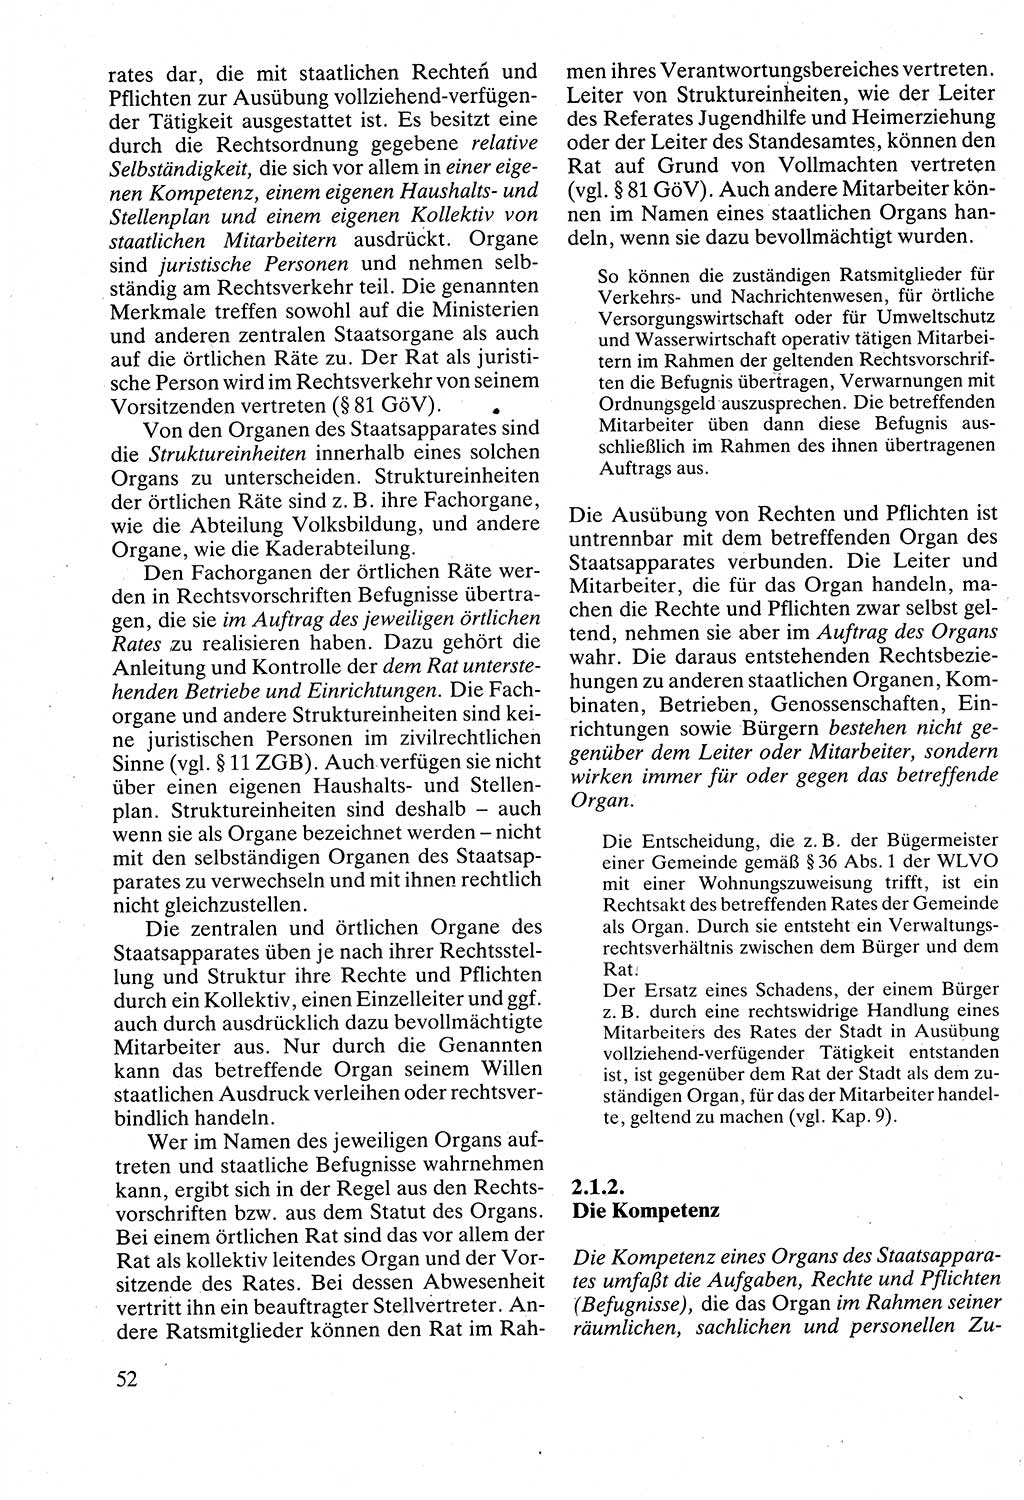 Verwaltungsrecht [Deutsche Demokratische Republik (DDR)], Lehrbuch 1988, Seite 52 (Verw.-R. DDR Lb. 1988, S. 52)